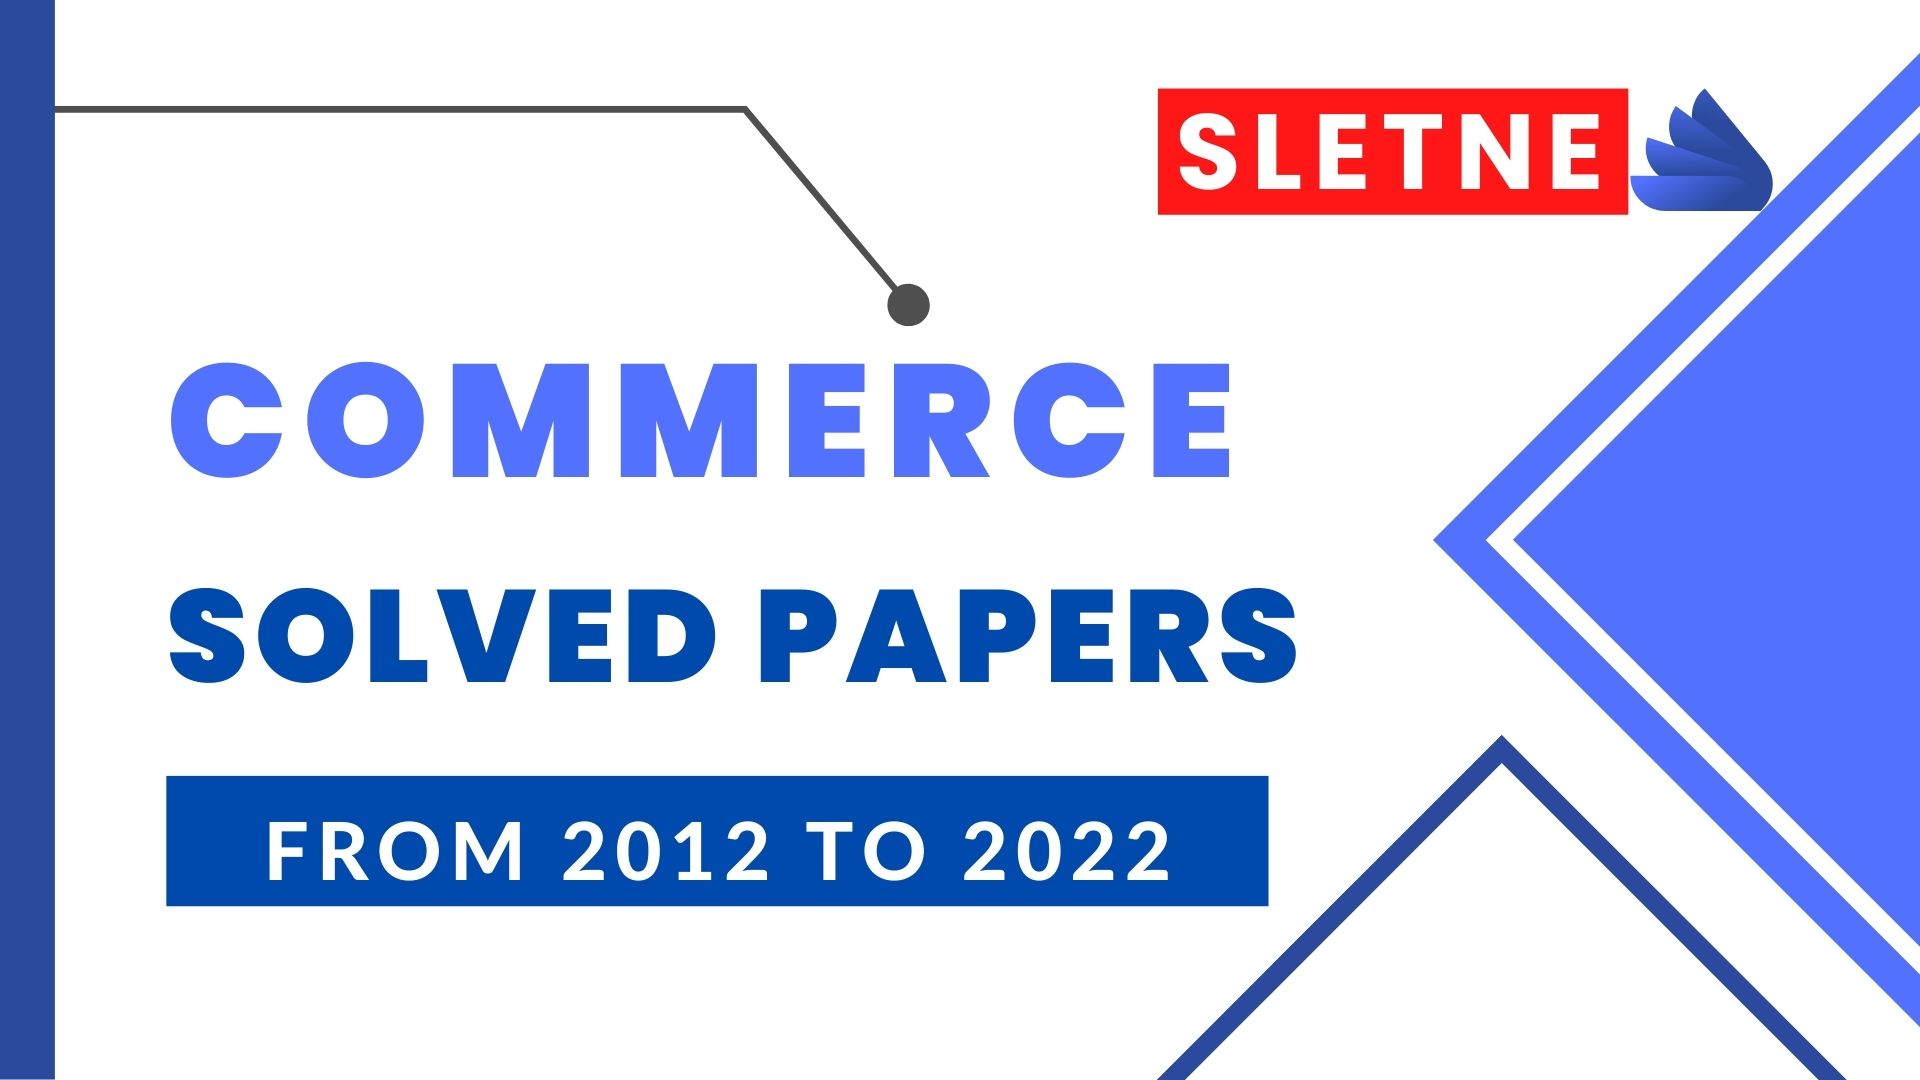 slet ne commerce solved paper 2015